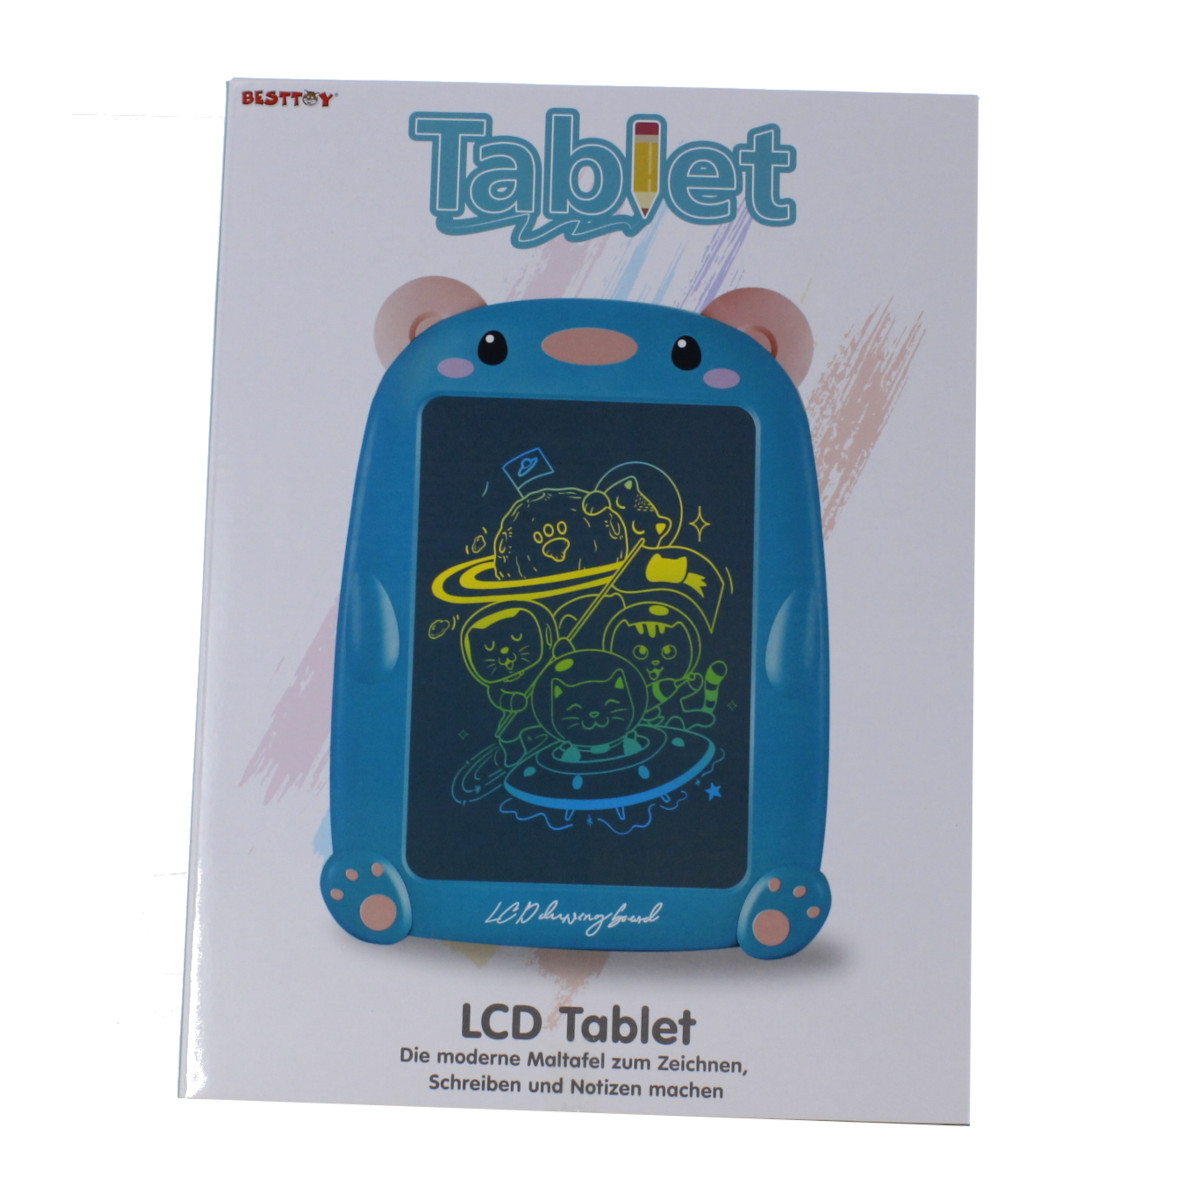 Besttoy - Zeichentafel - LCD Tablet - blau